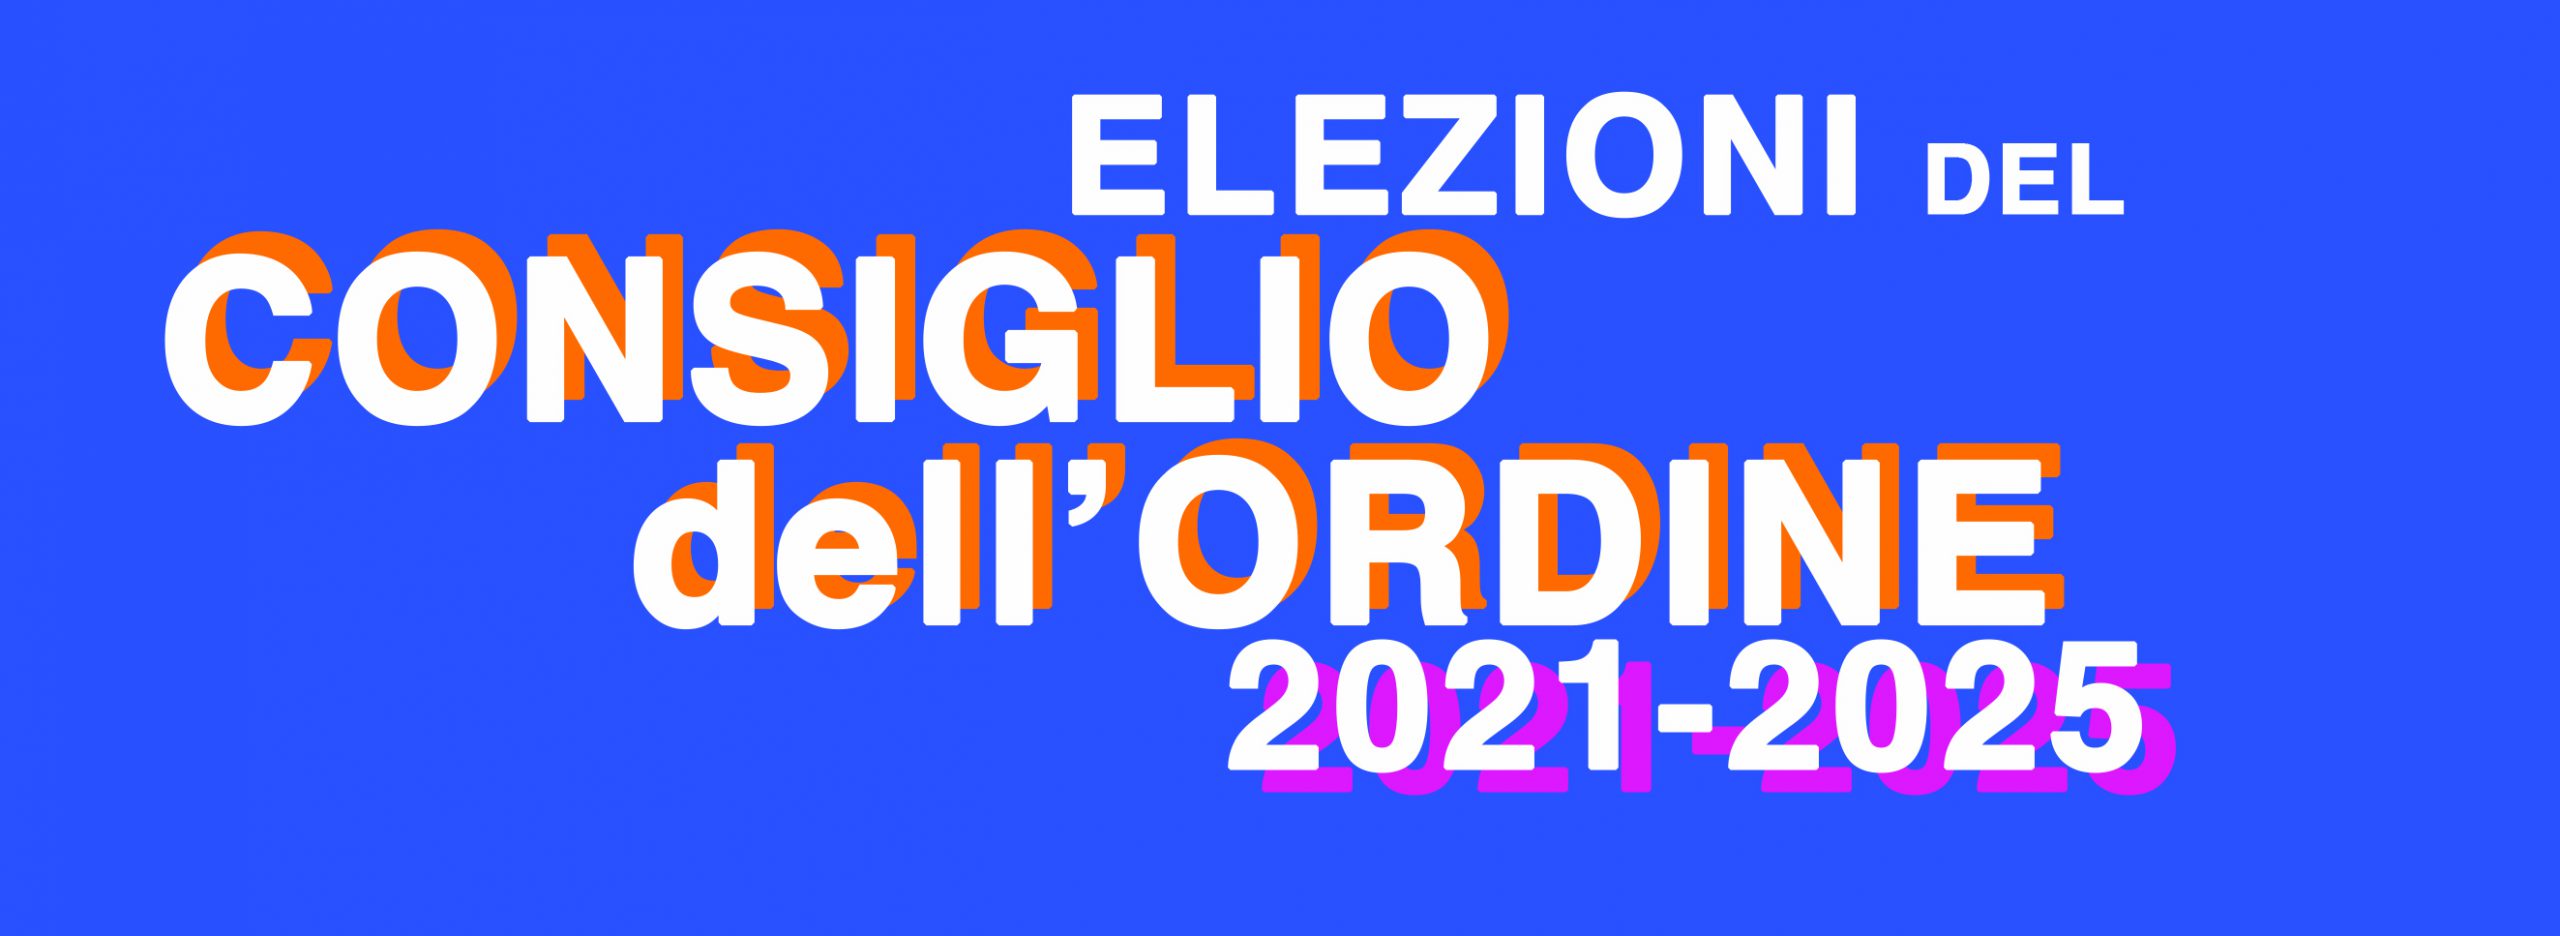 Elezioni Rinnovo Consiglio quadriennio 2021/2025